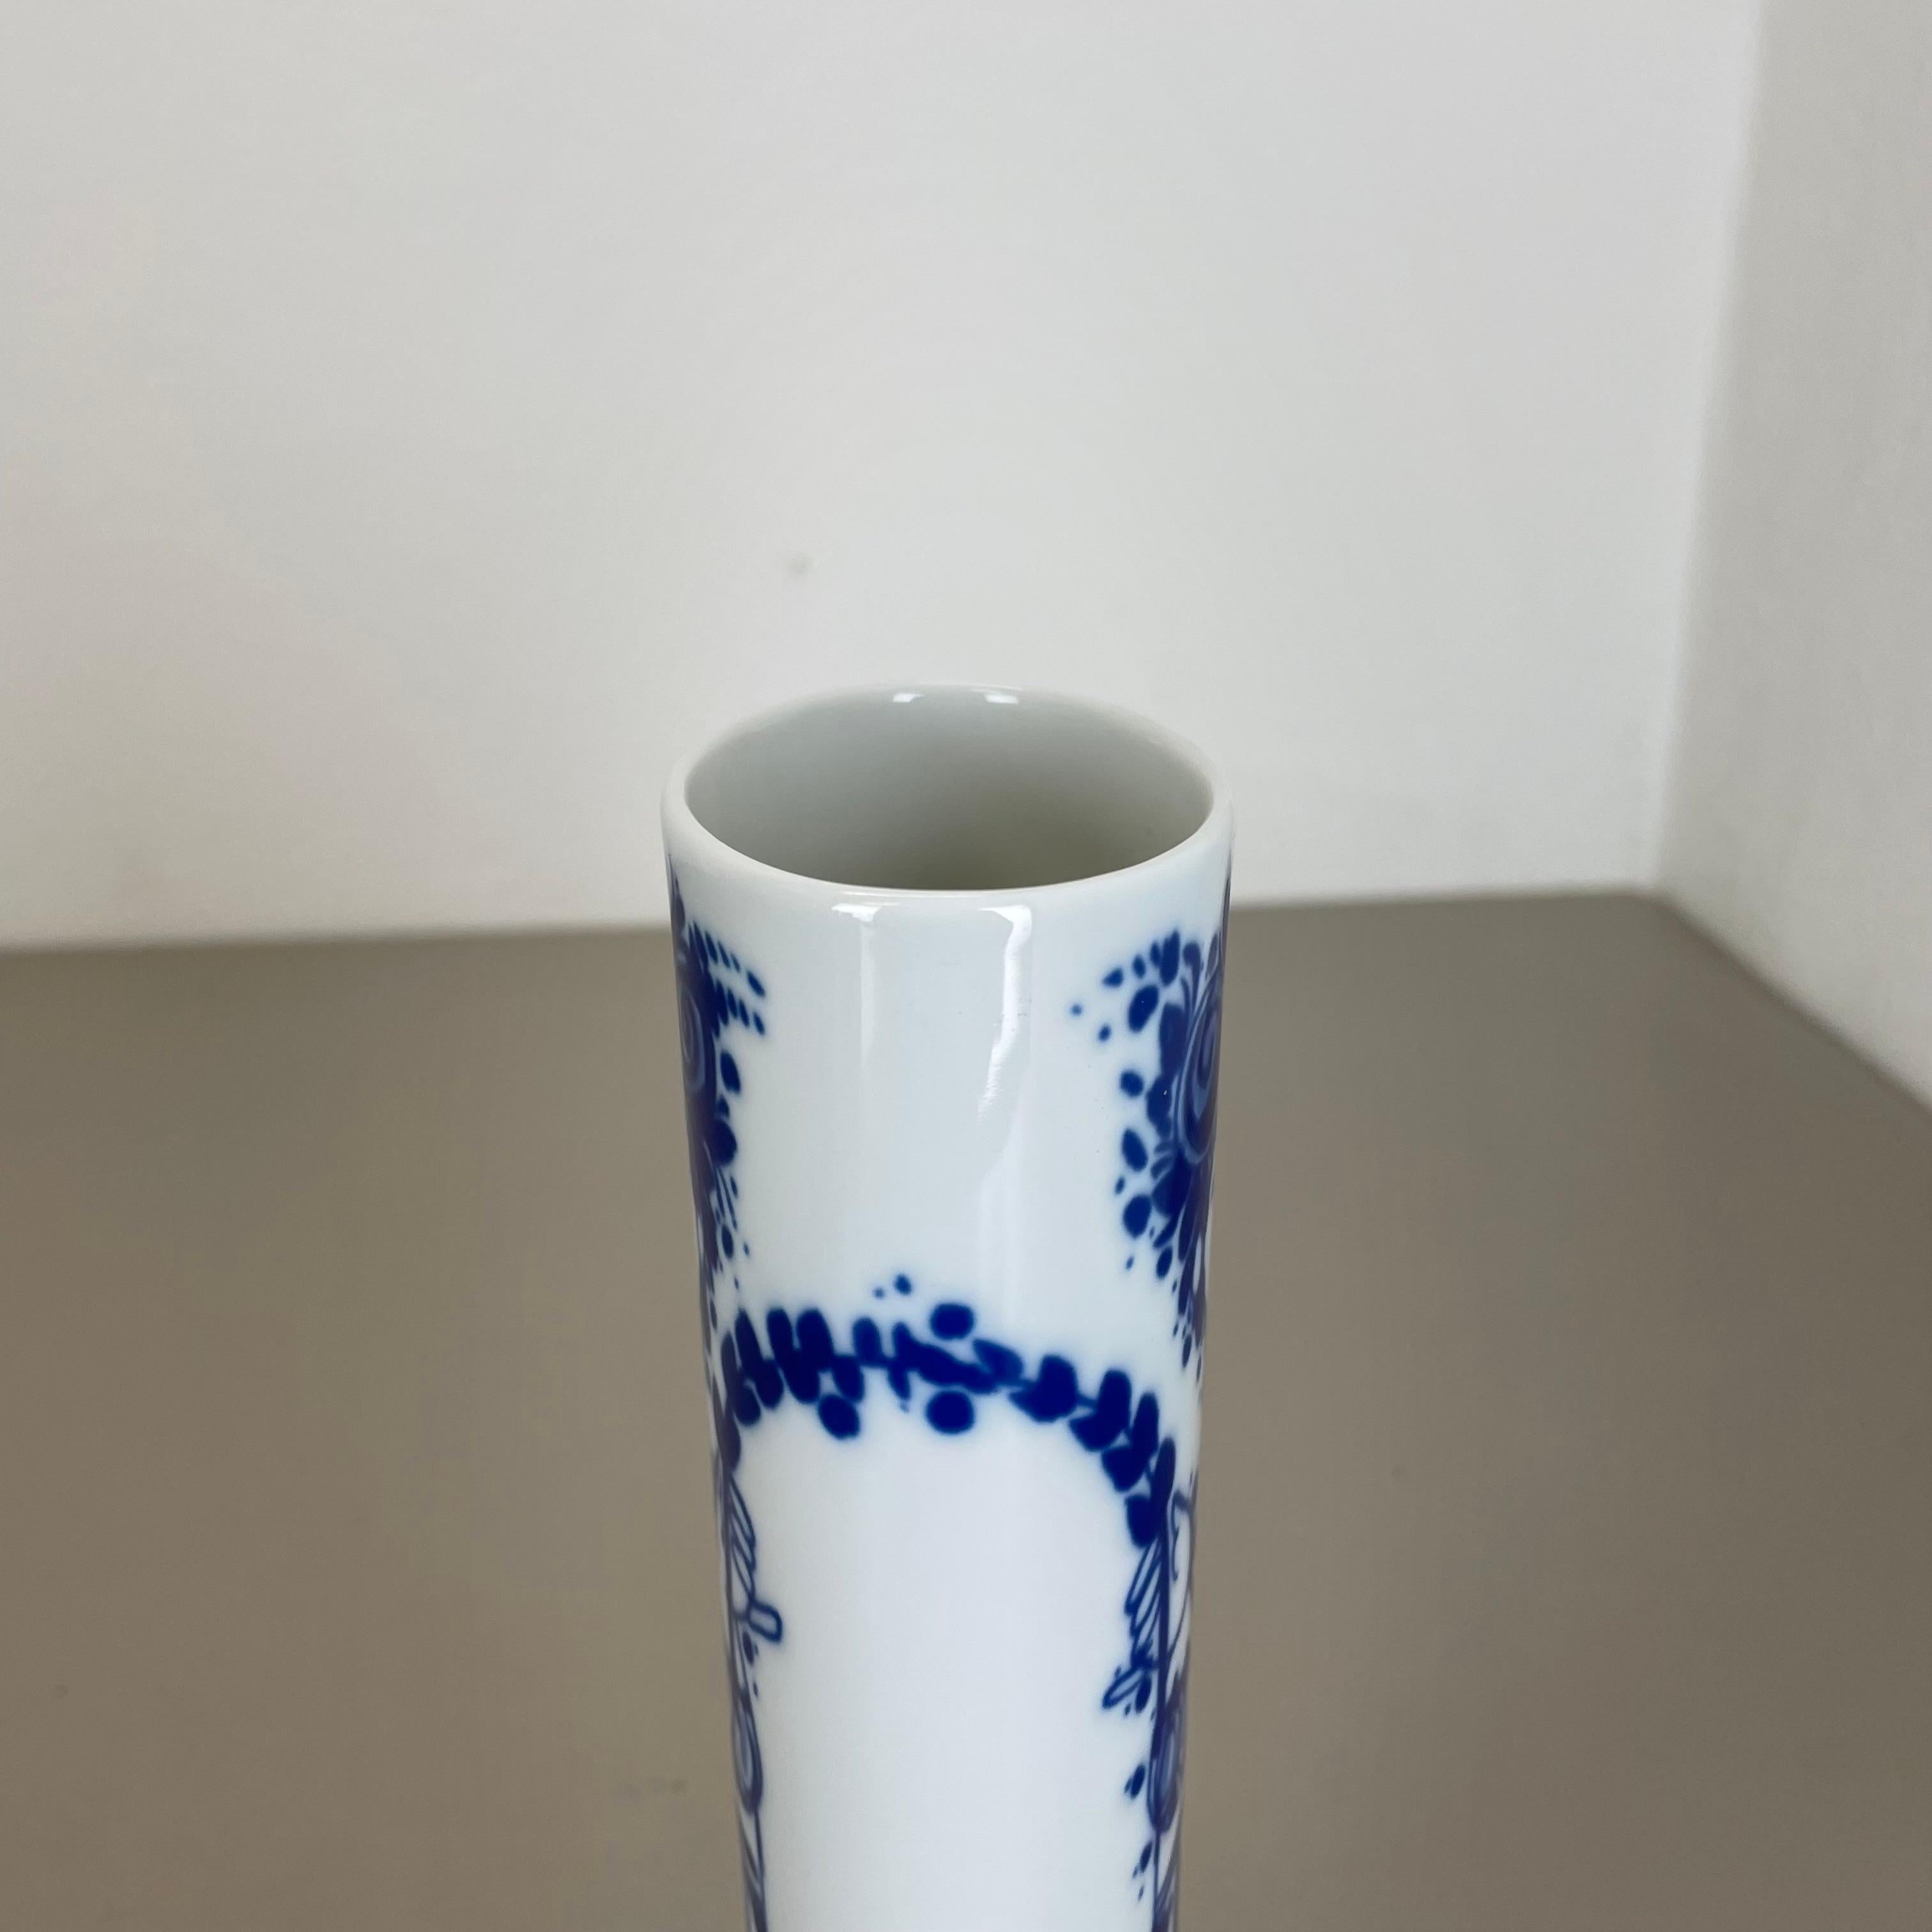 Op Art Porcelain Vase by Björn Wiinblad for Rosenthal Studio Line Germany, 1970s For Sale 5